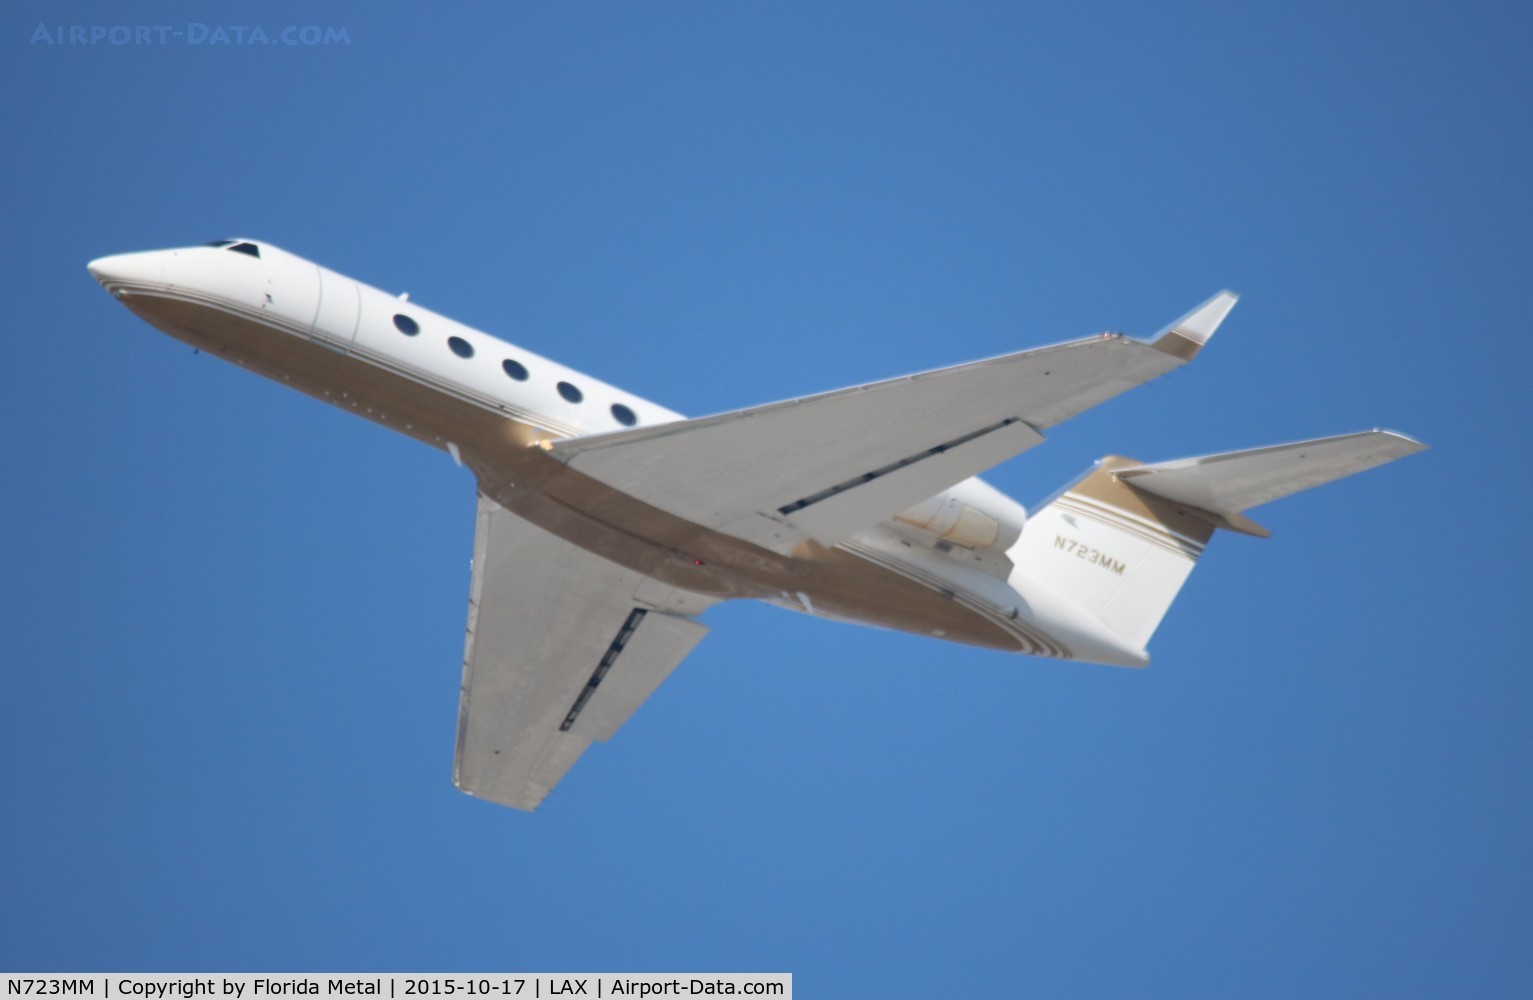 N723MM, 2007 Gulfstream Aerospace GIV-X (G350) C/N 4077, Gulfstream G350